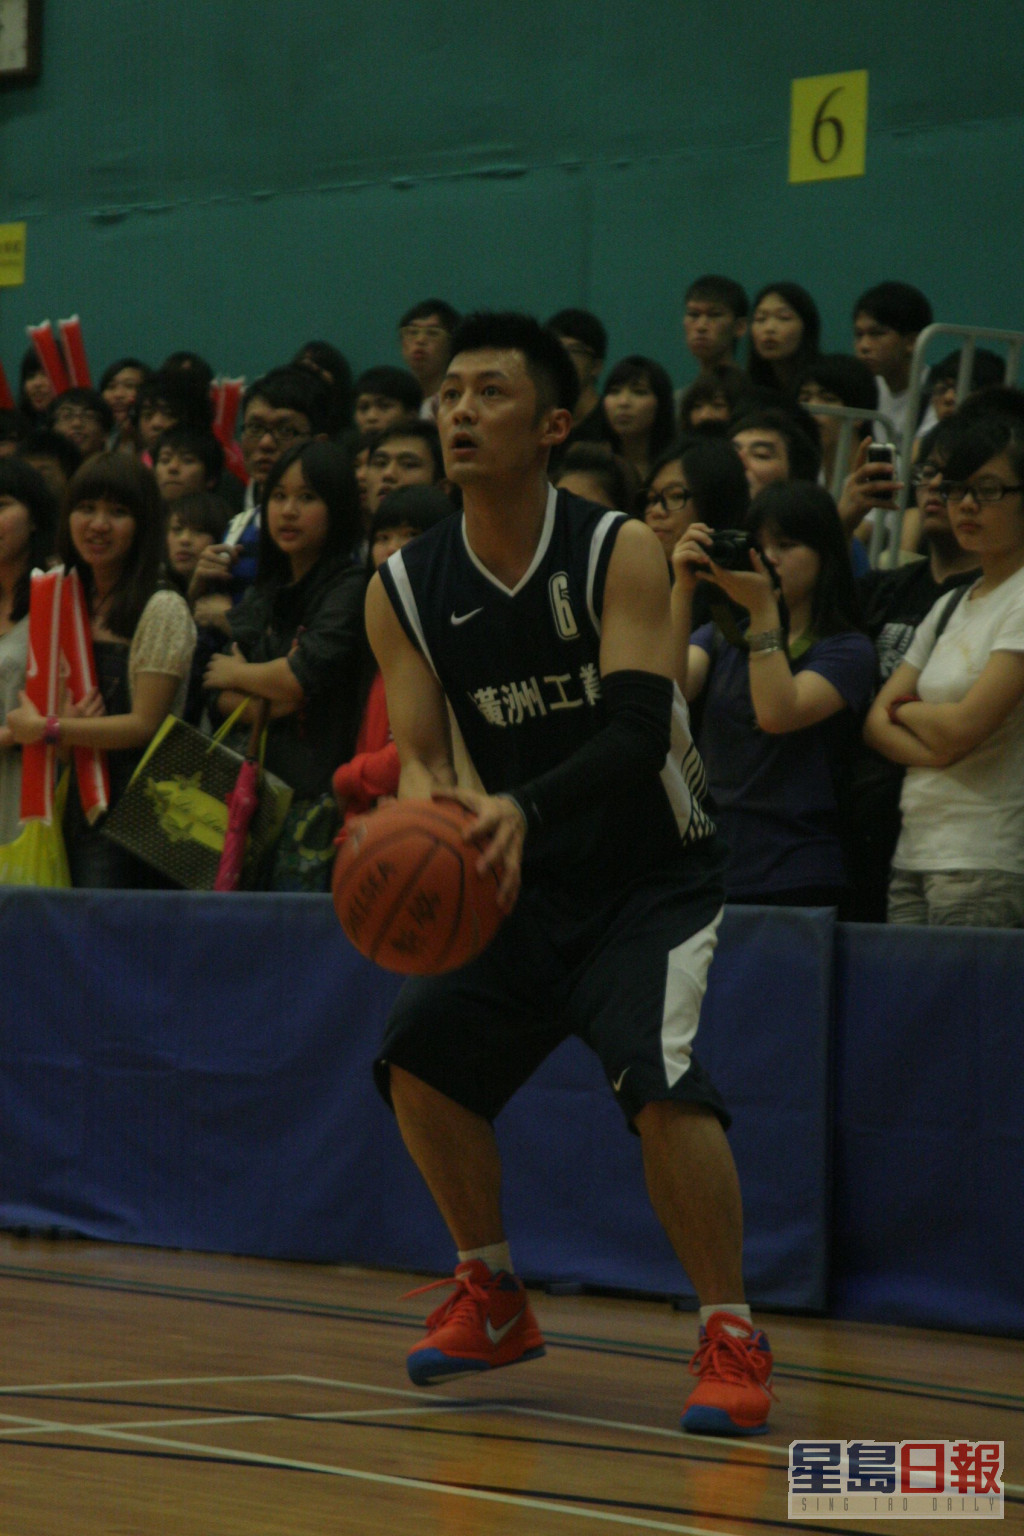 球技在香港艺人中绝对不俗。